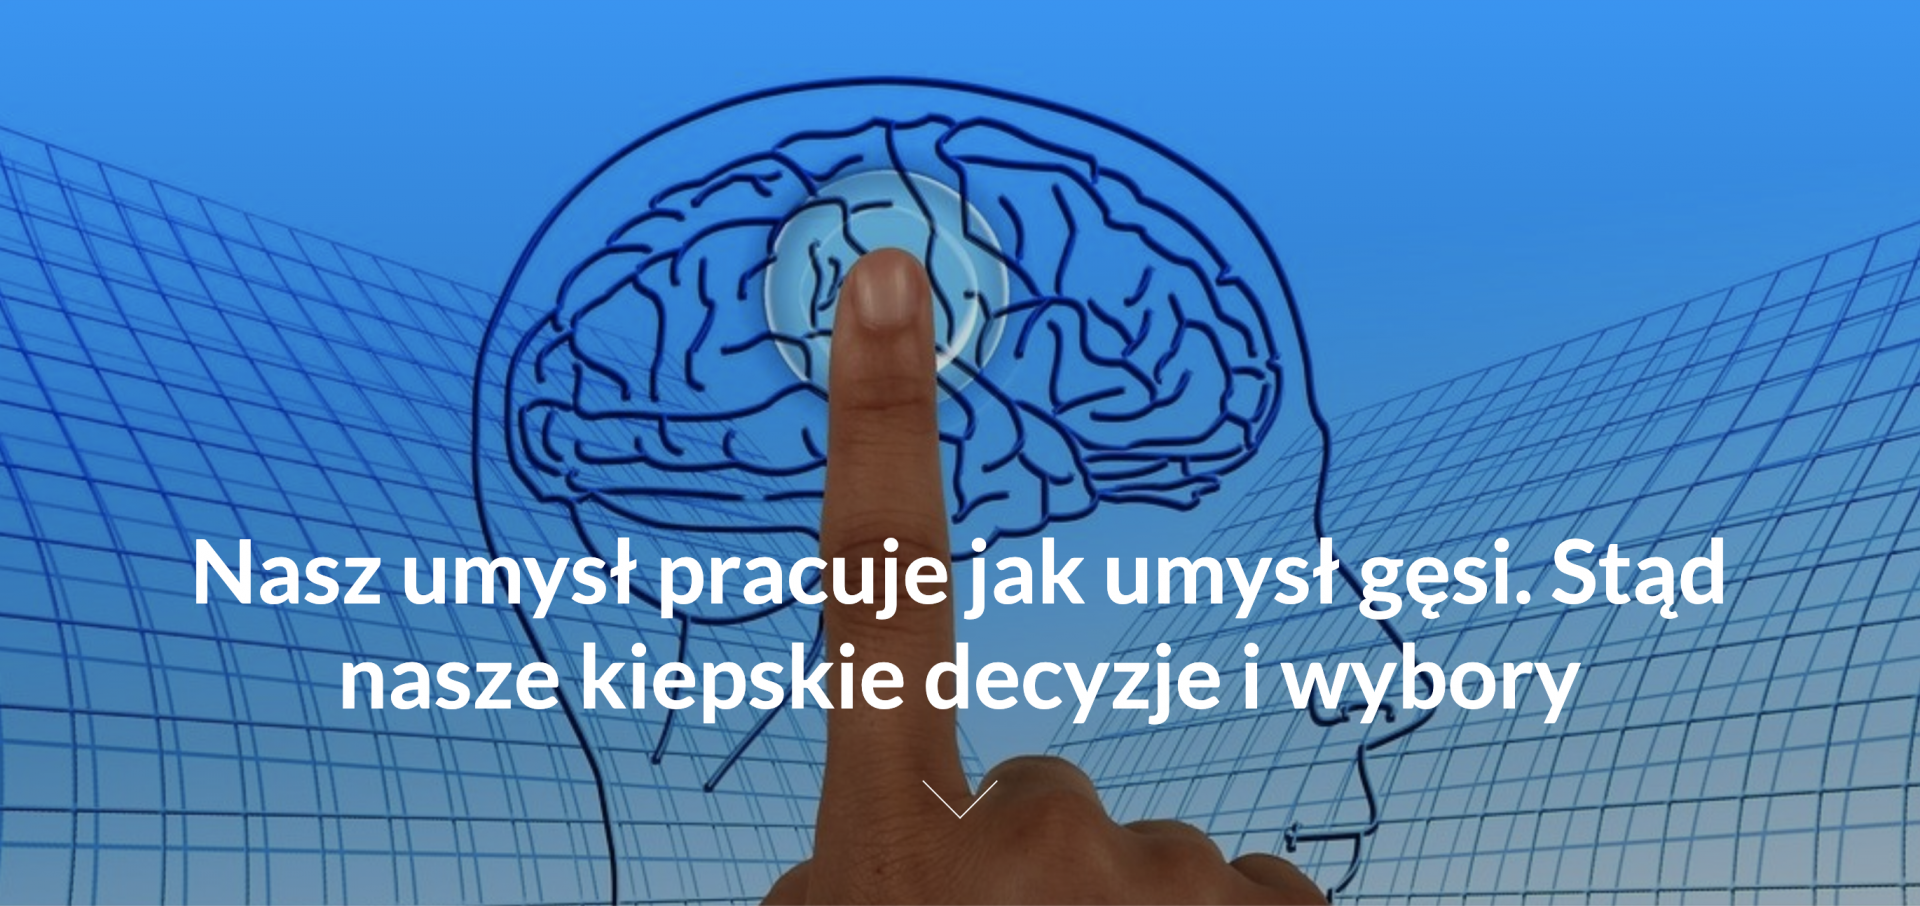 Dziennik Polski: Nasz umysł pracuje jak umysł gęsi